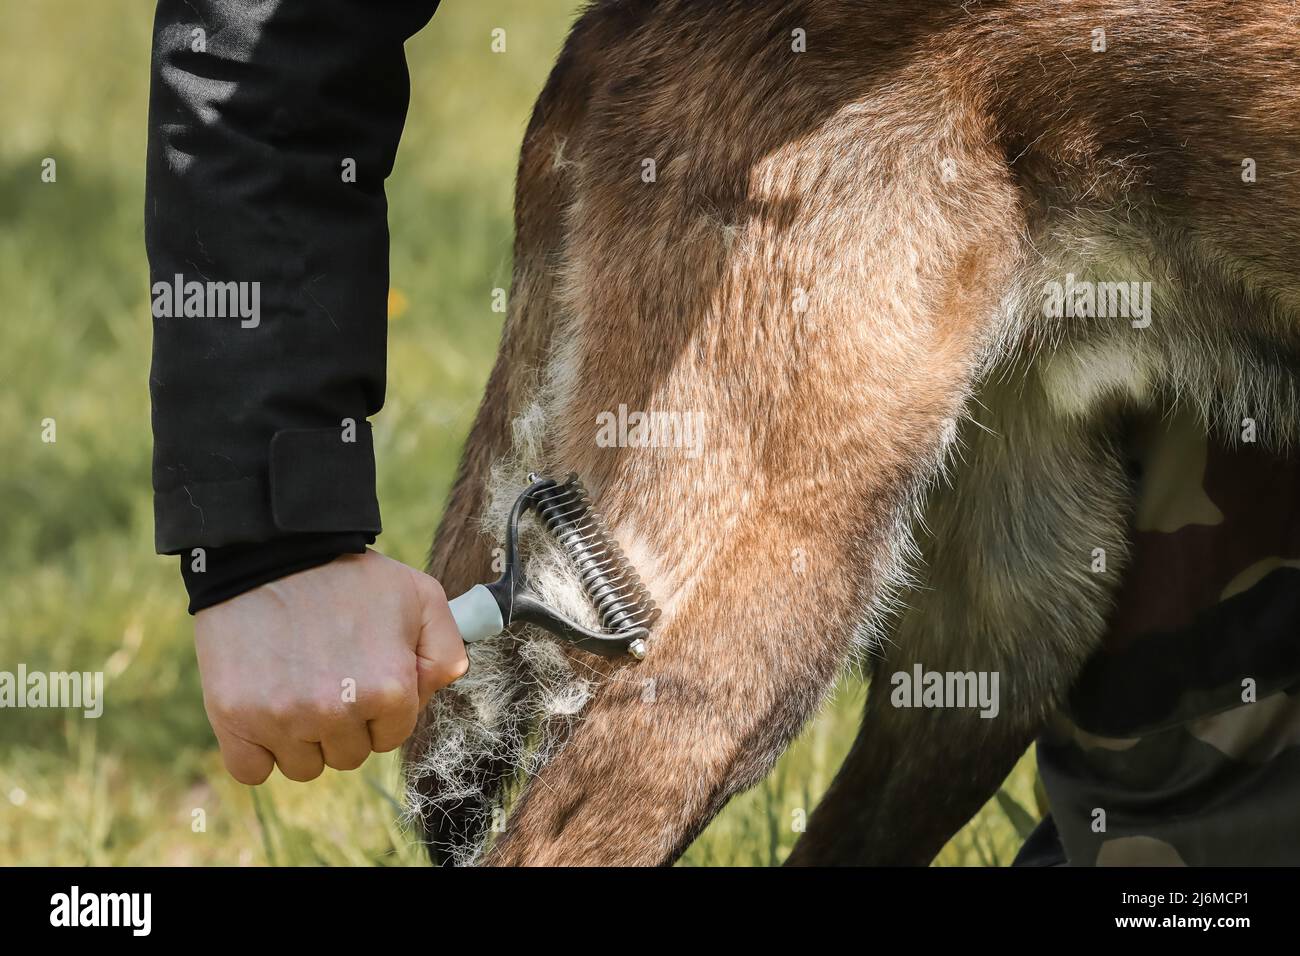 cepillando el perro pastor belga malinois moldeando el mantenimiento de la capa de la pérdida del pelo del invierno Foto de stock